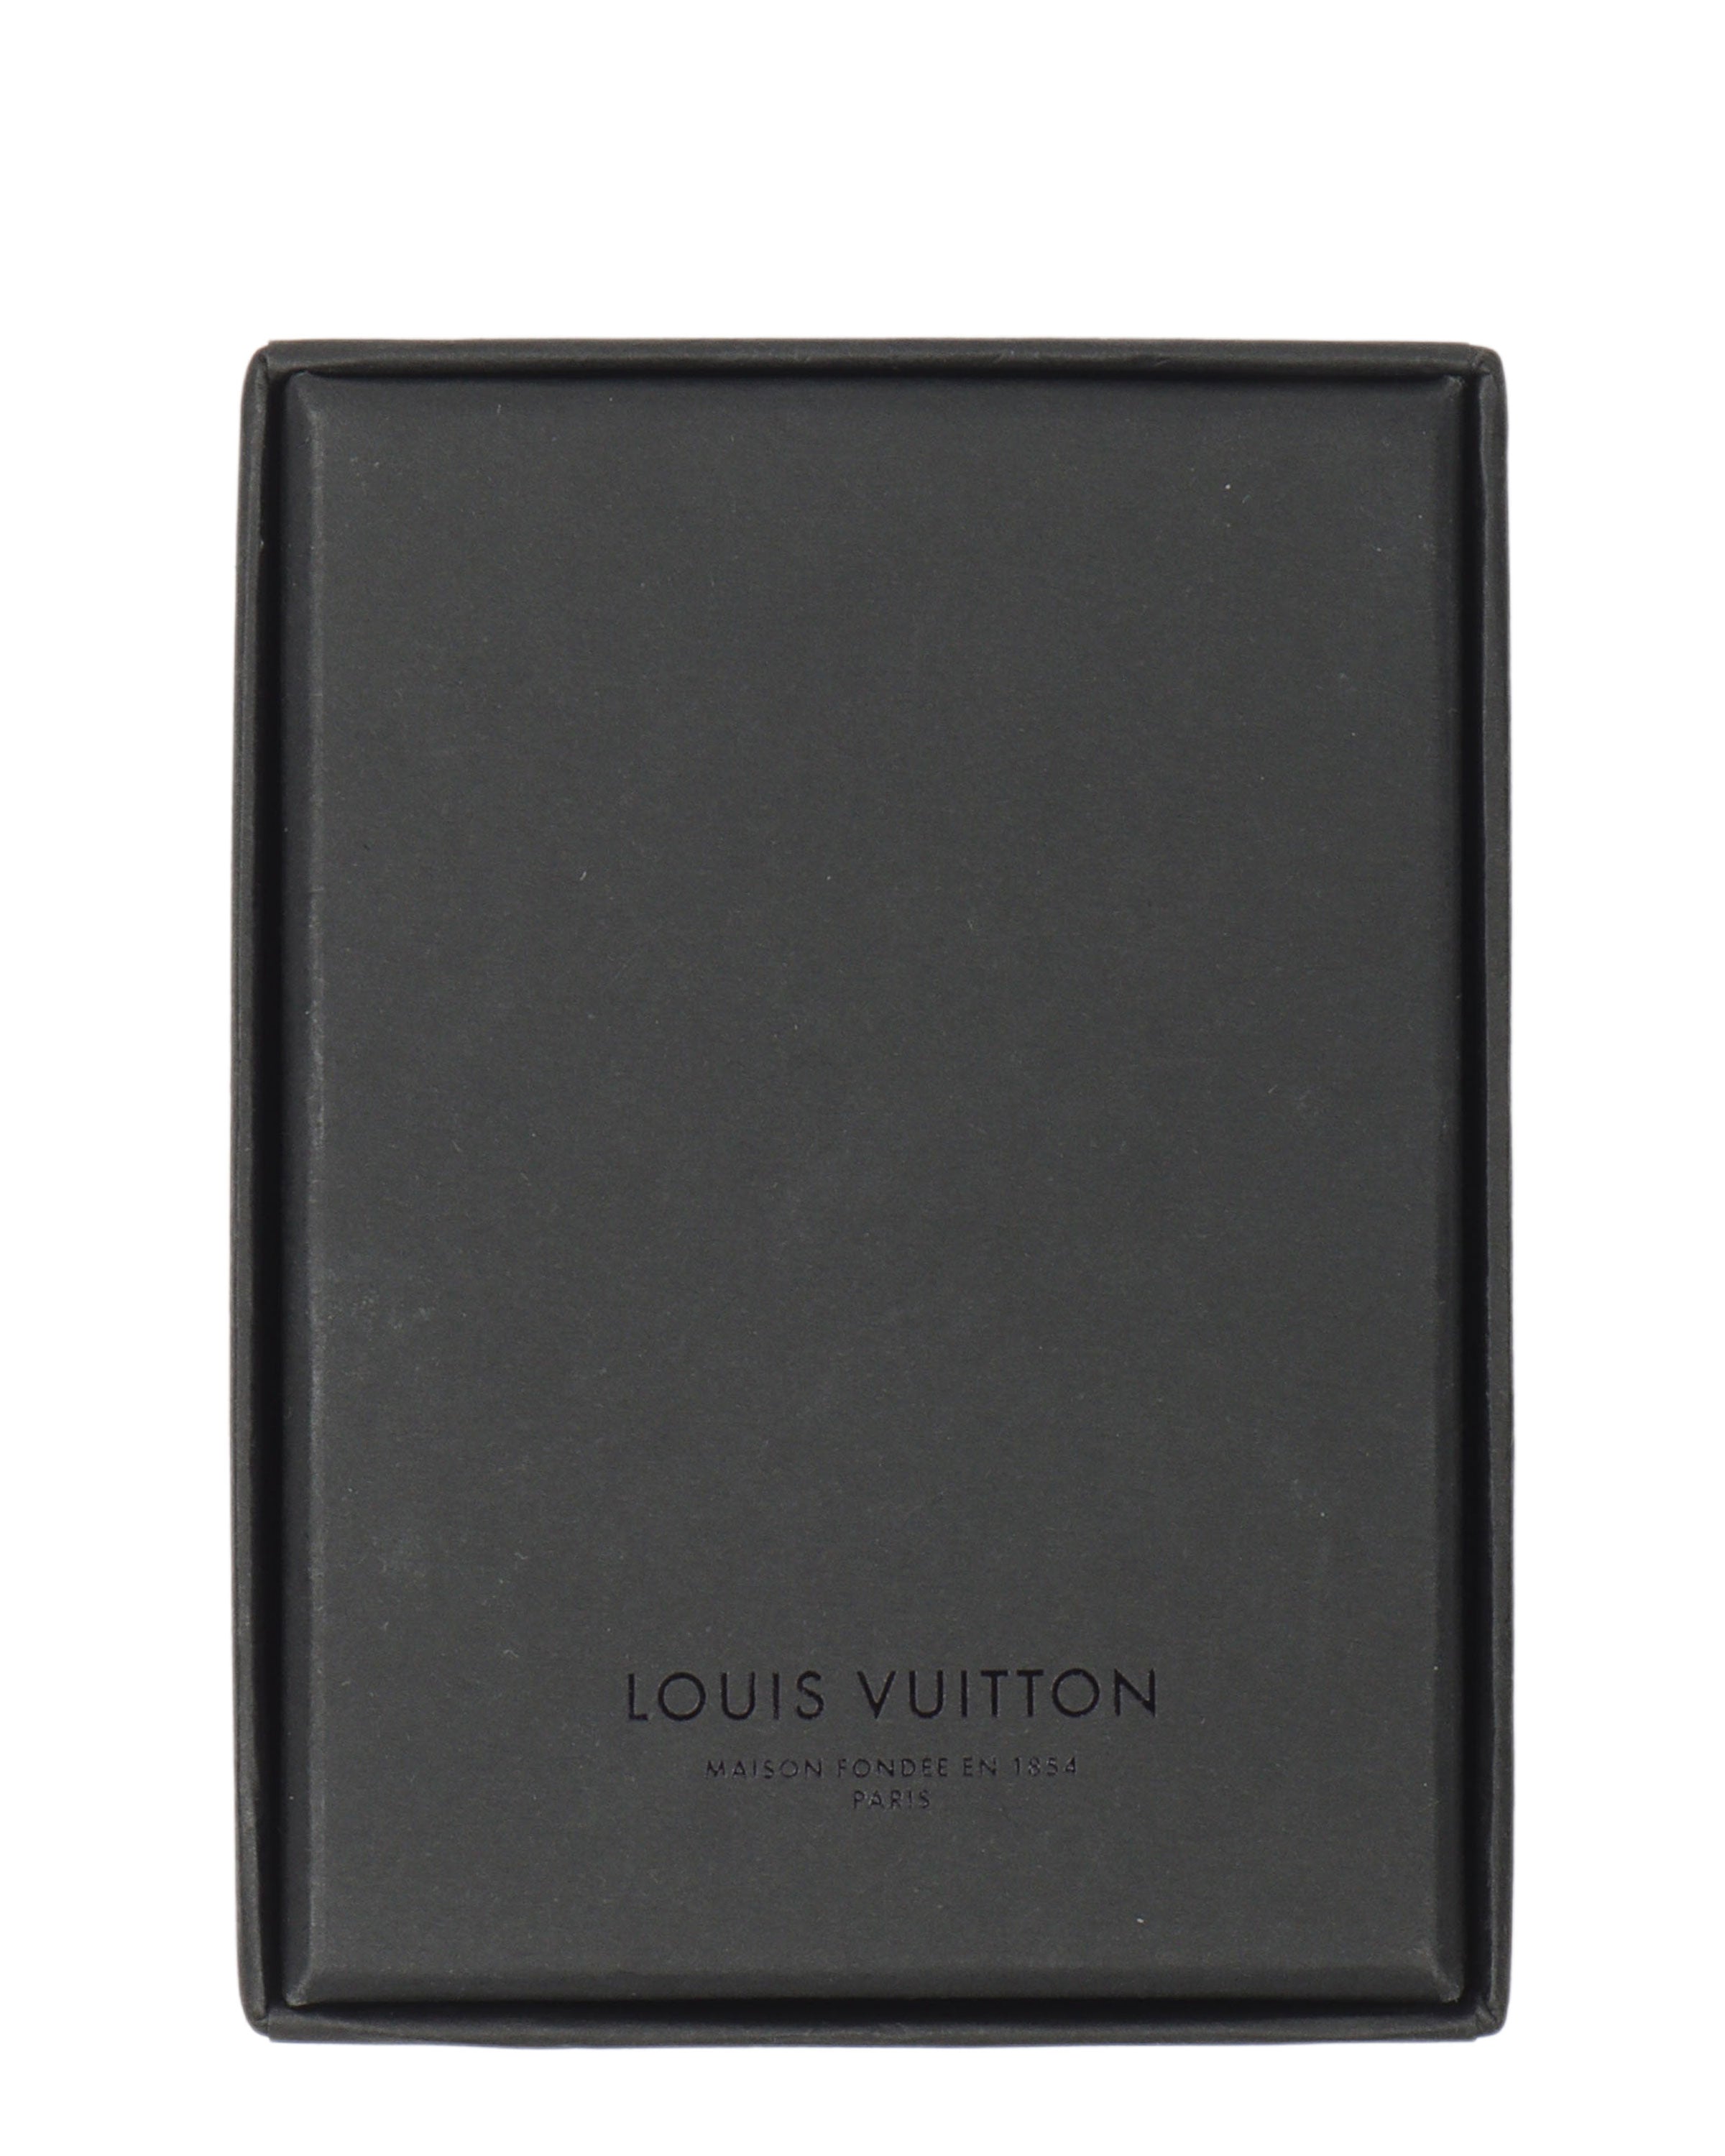 Louis Vuitton Gold x Silver Metallic Damier Playing Cards Poker